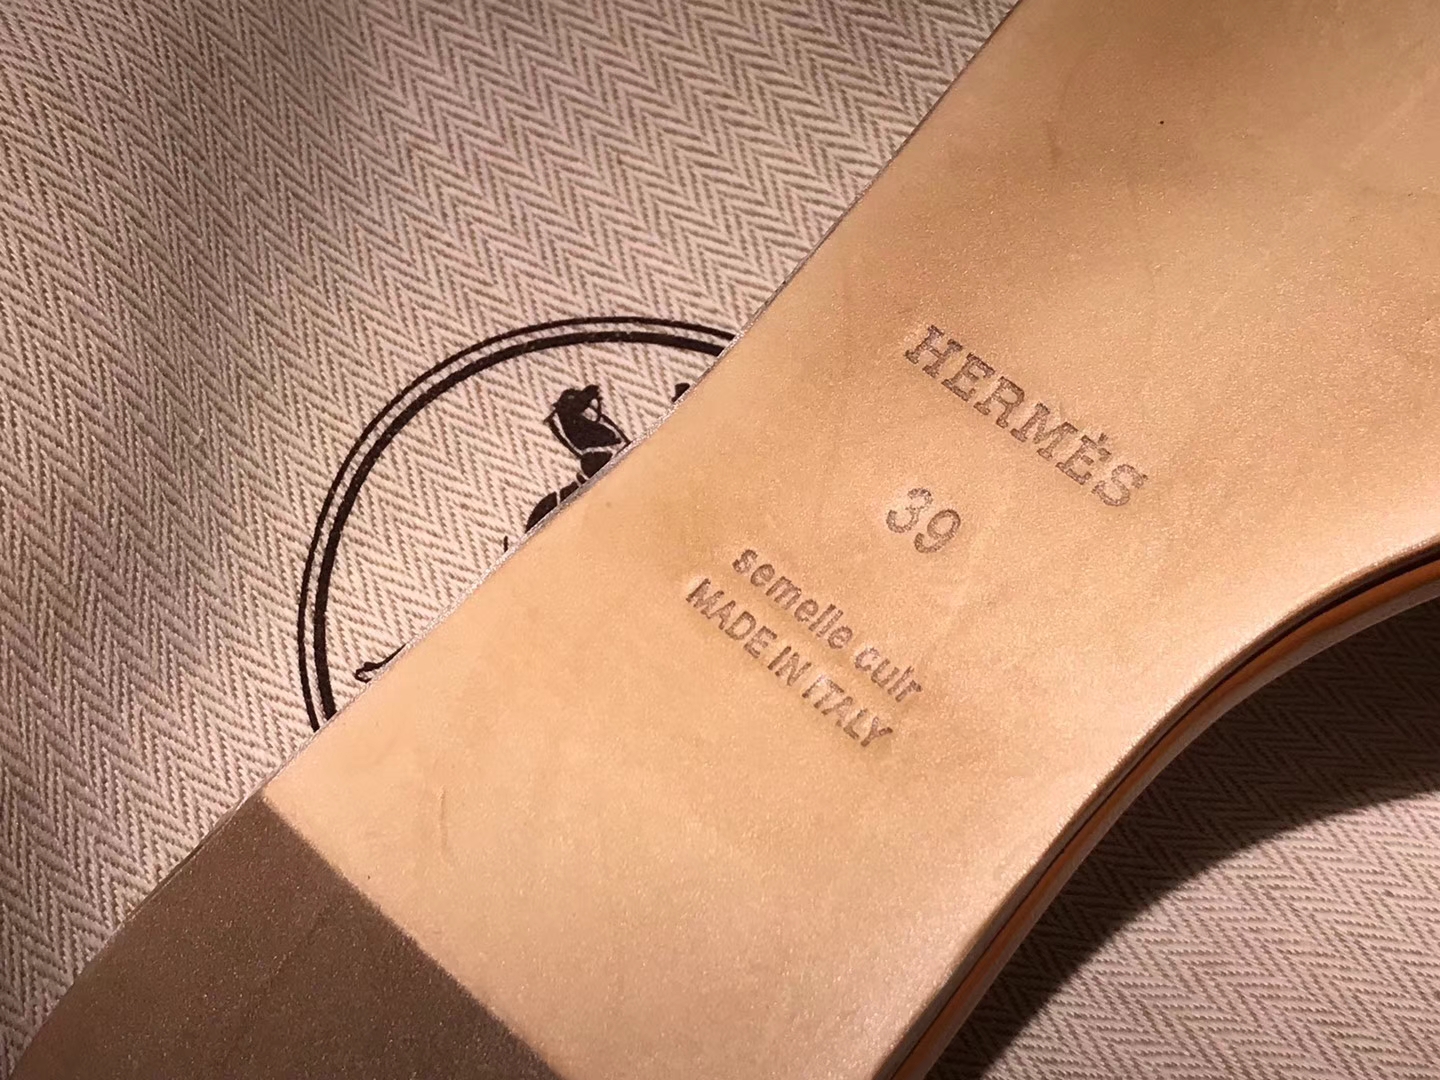 HERMES 爱马仕 猪鼻子拖鞋  高端订制  独家品质 金棕色